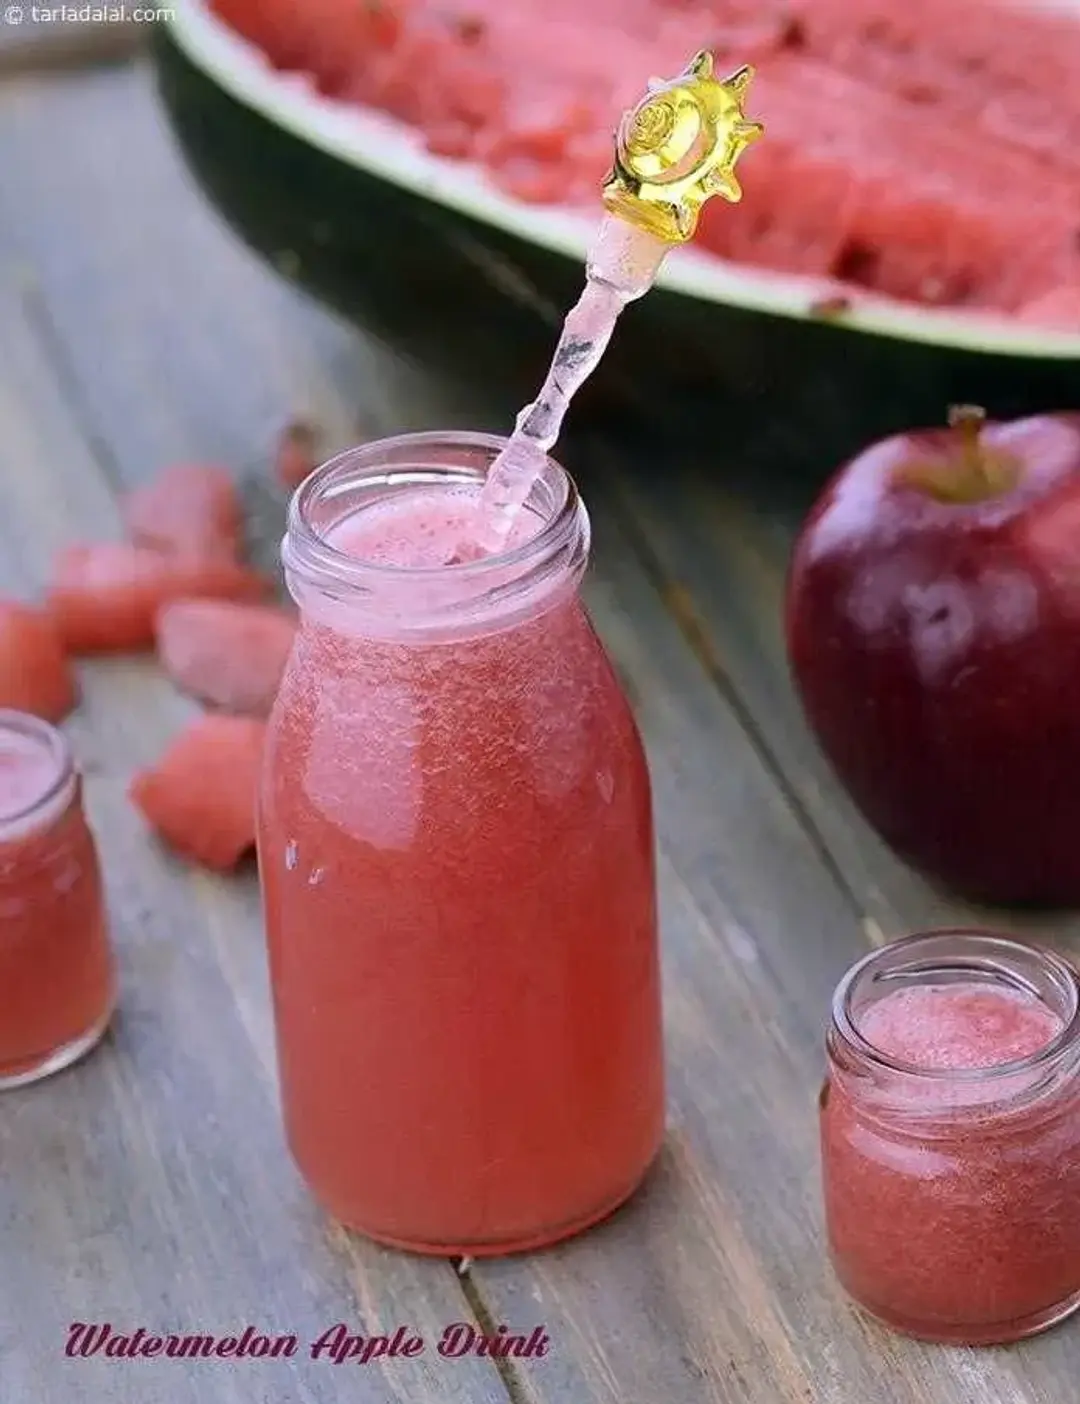 Watermelon Apple Juice recipe